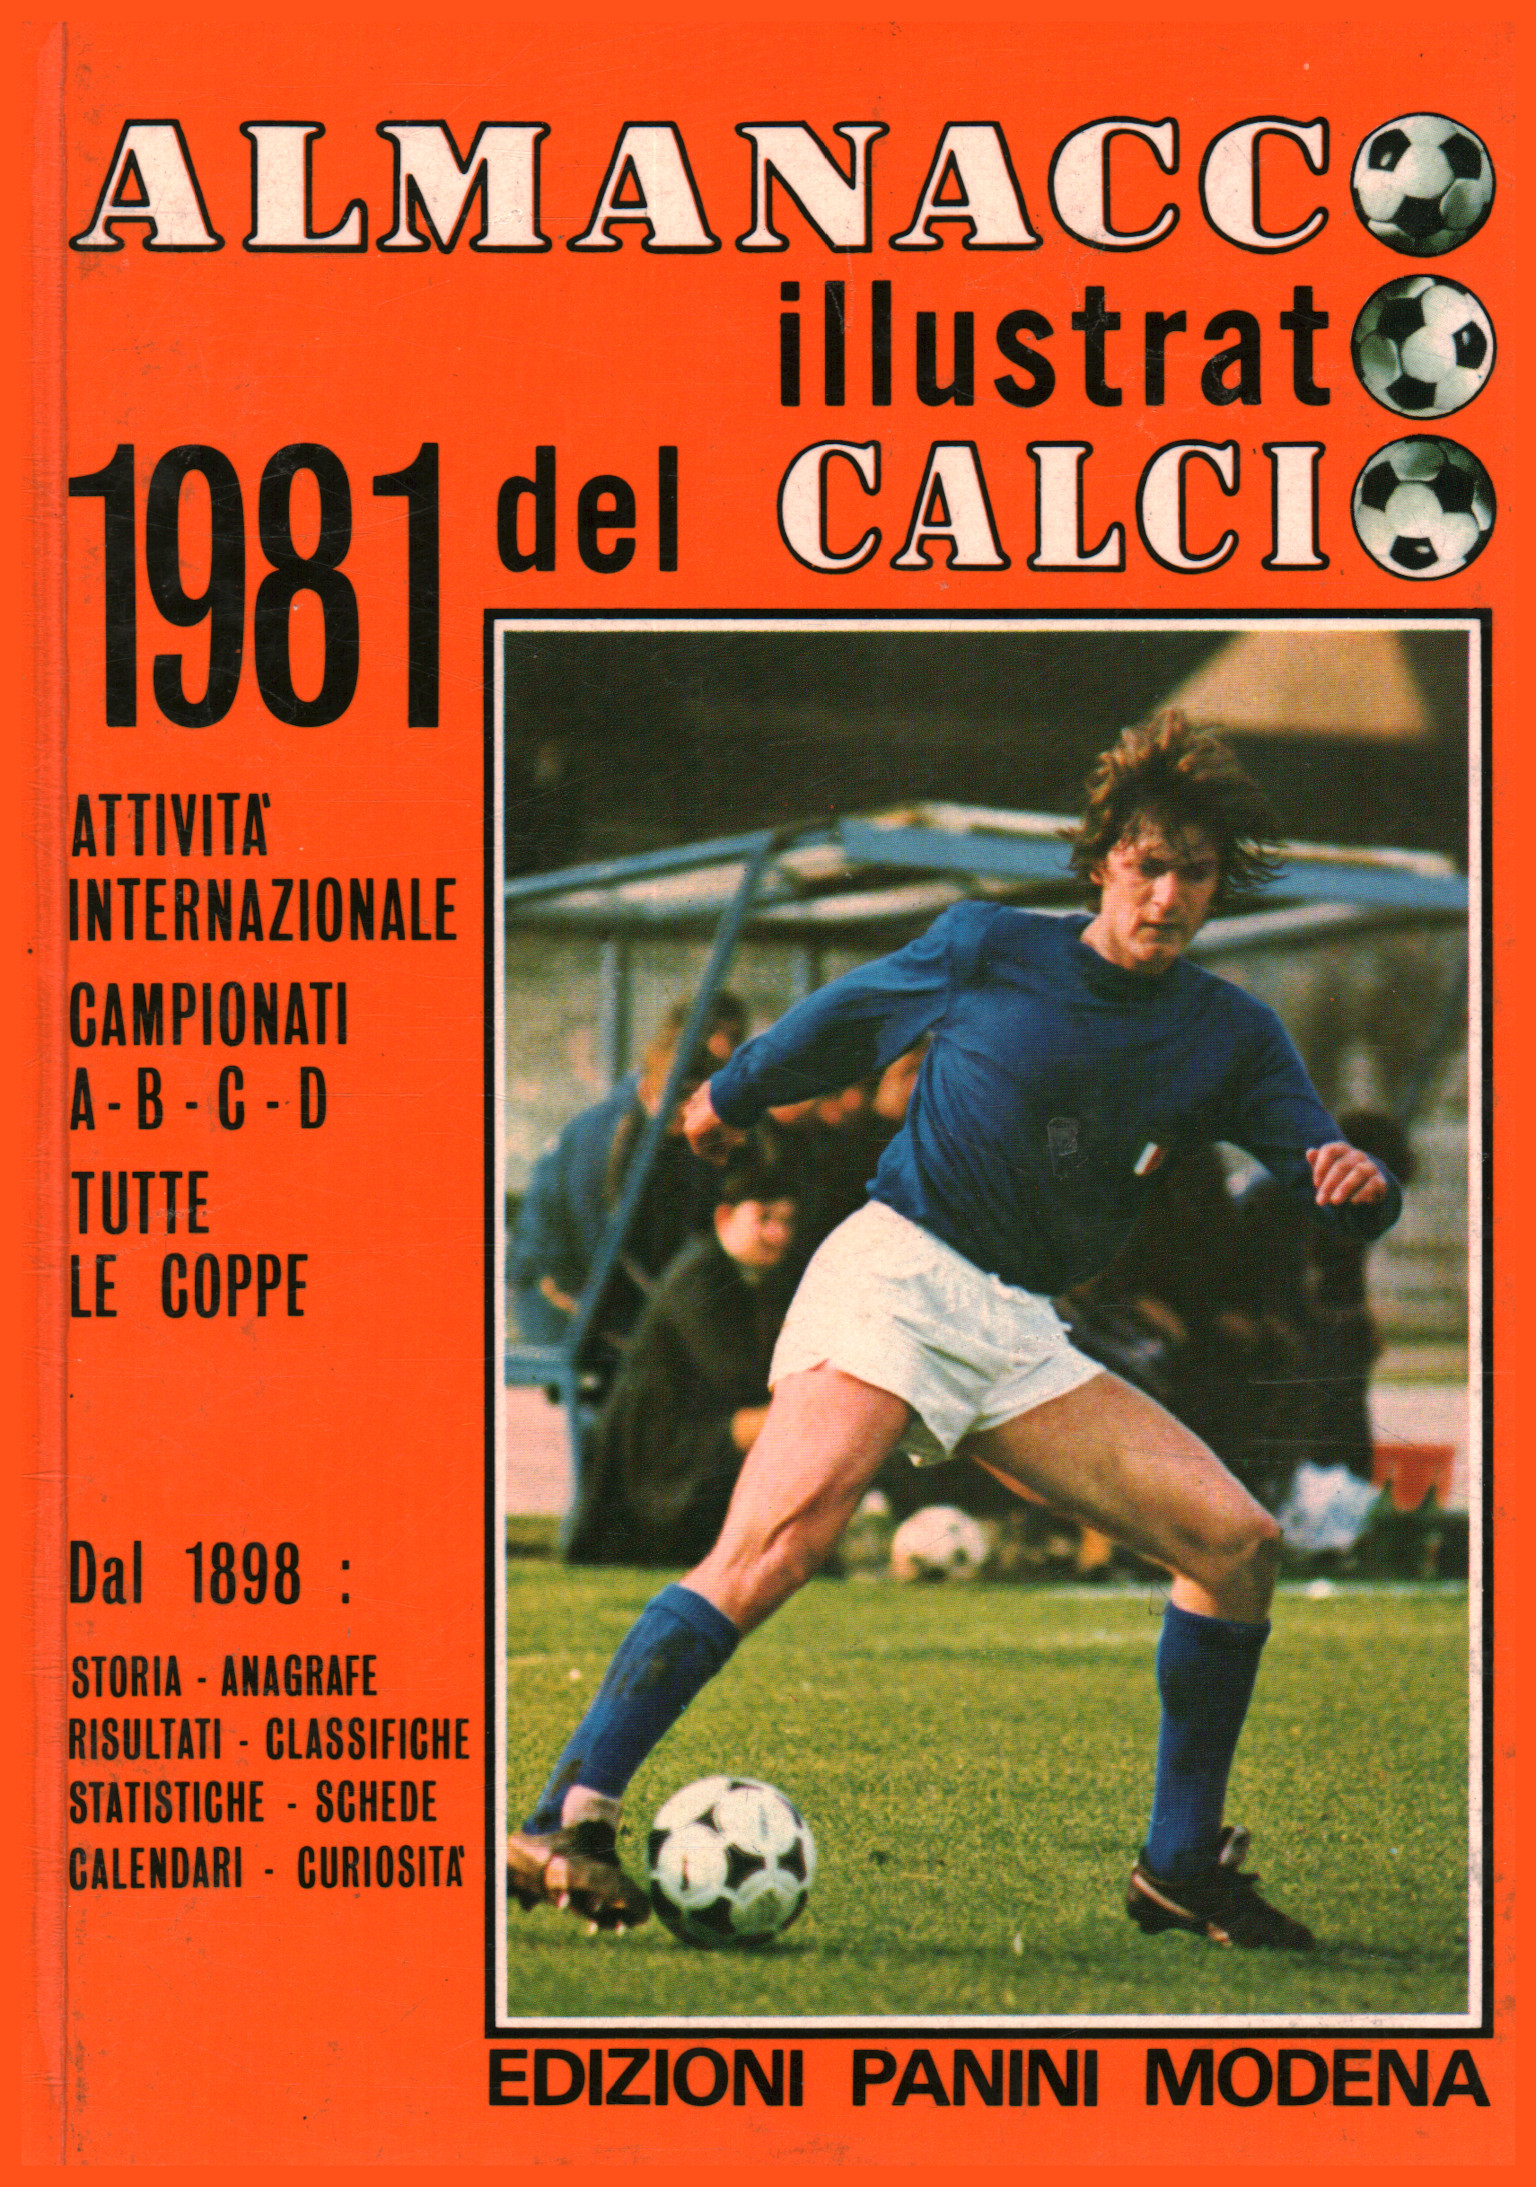 Almanacco illustrato del calcio 1981 (Vo